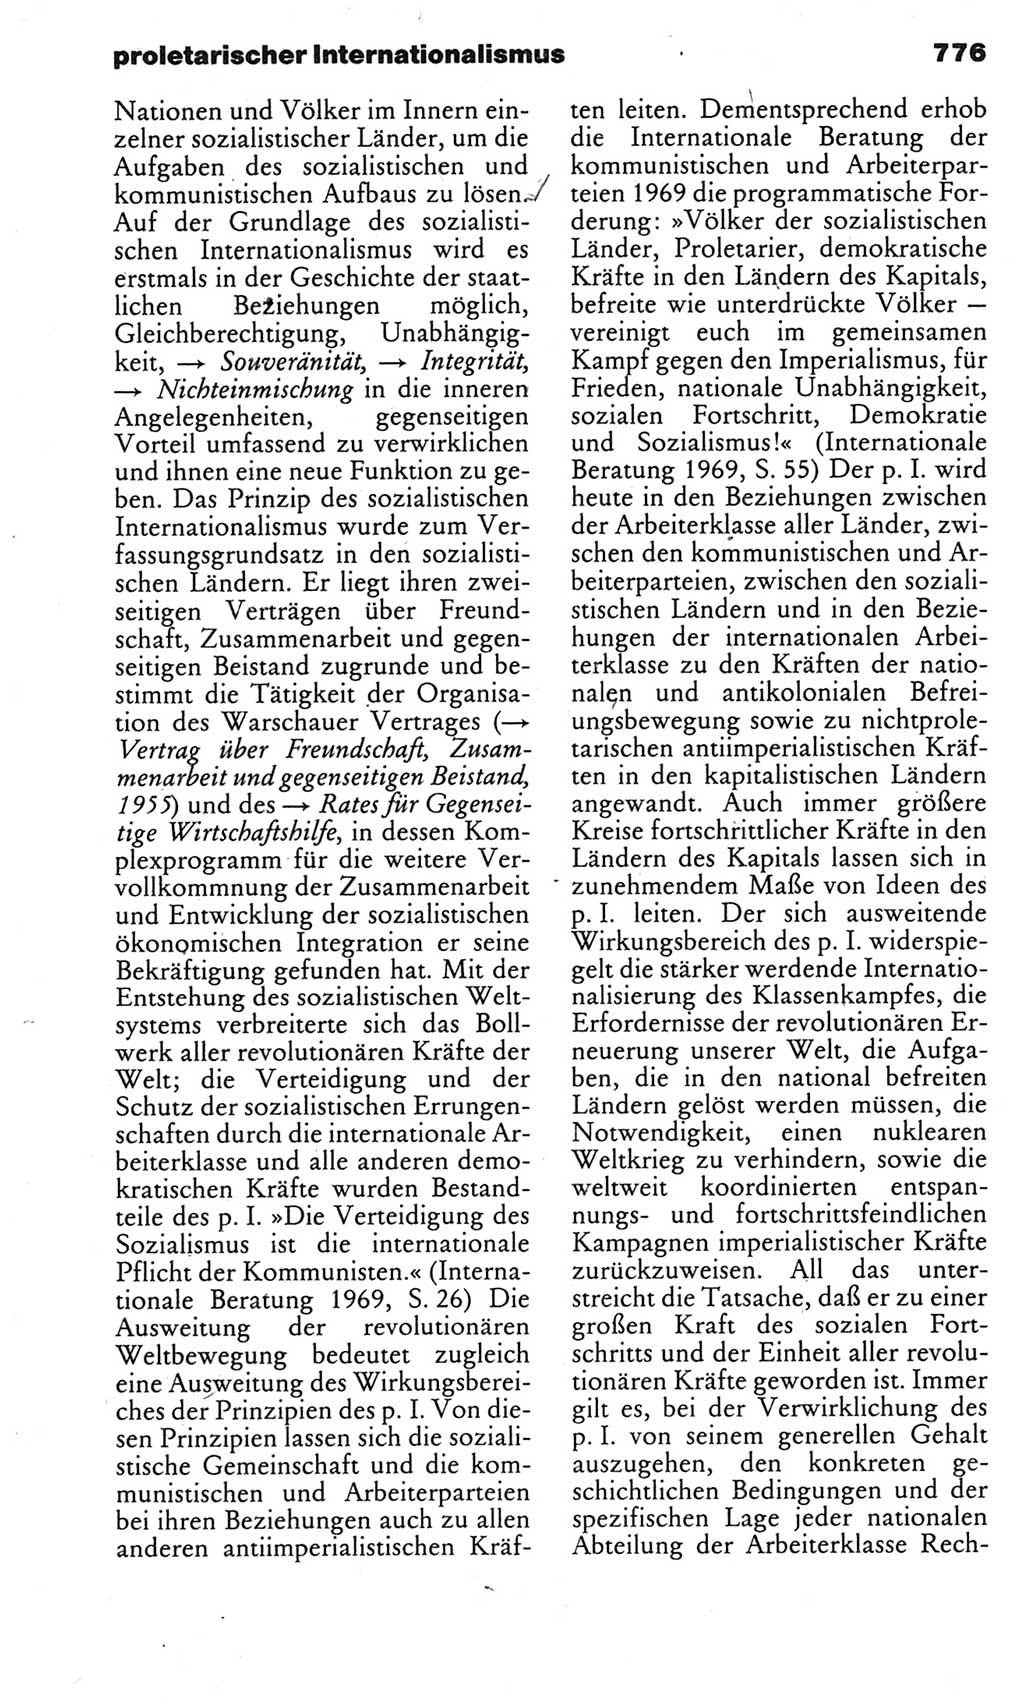 Kleines politisches Wörterbuch [Deutsche Demokratische Republik (DDR)] 1983, Seite 776 (Kl. pol. Wb. DDR 1983, S. 776)